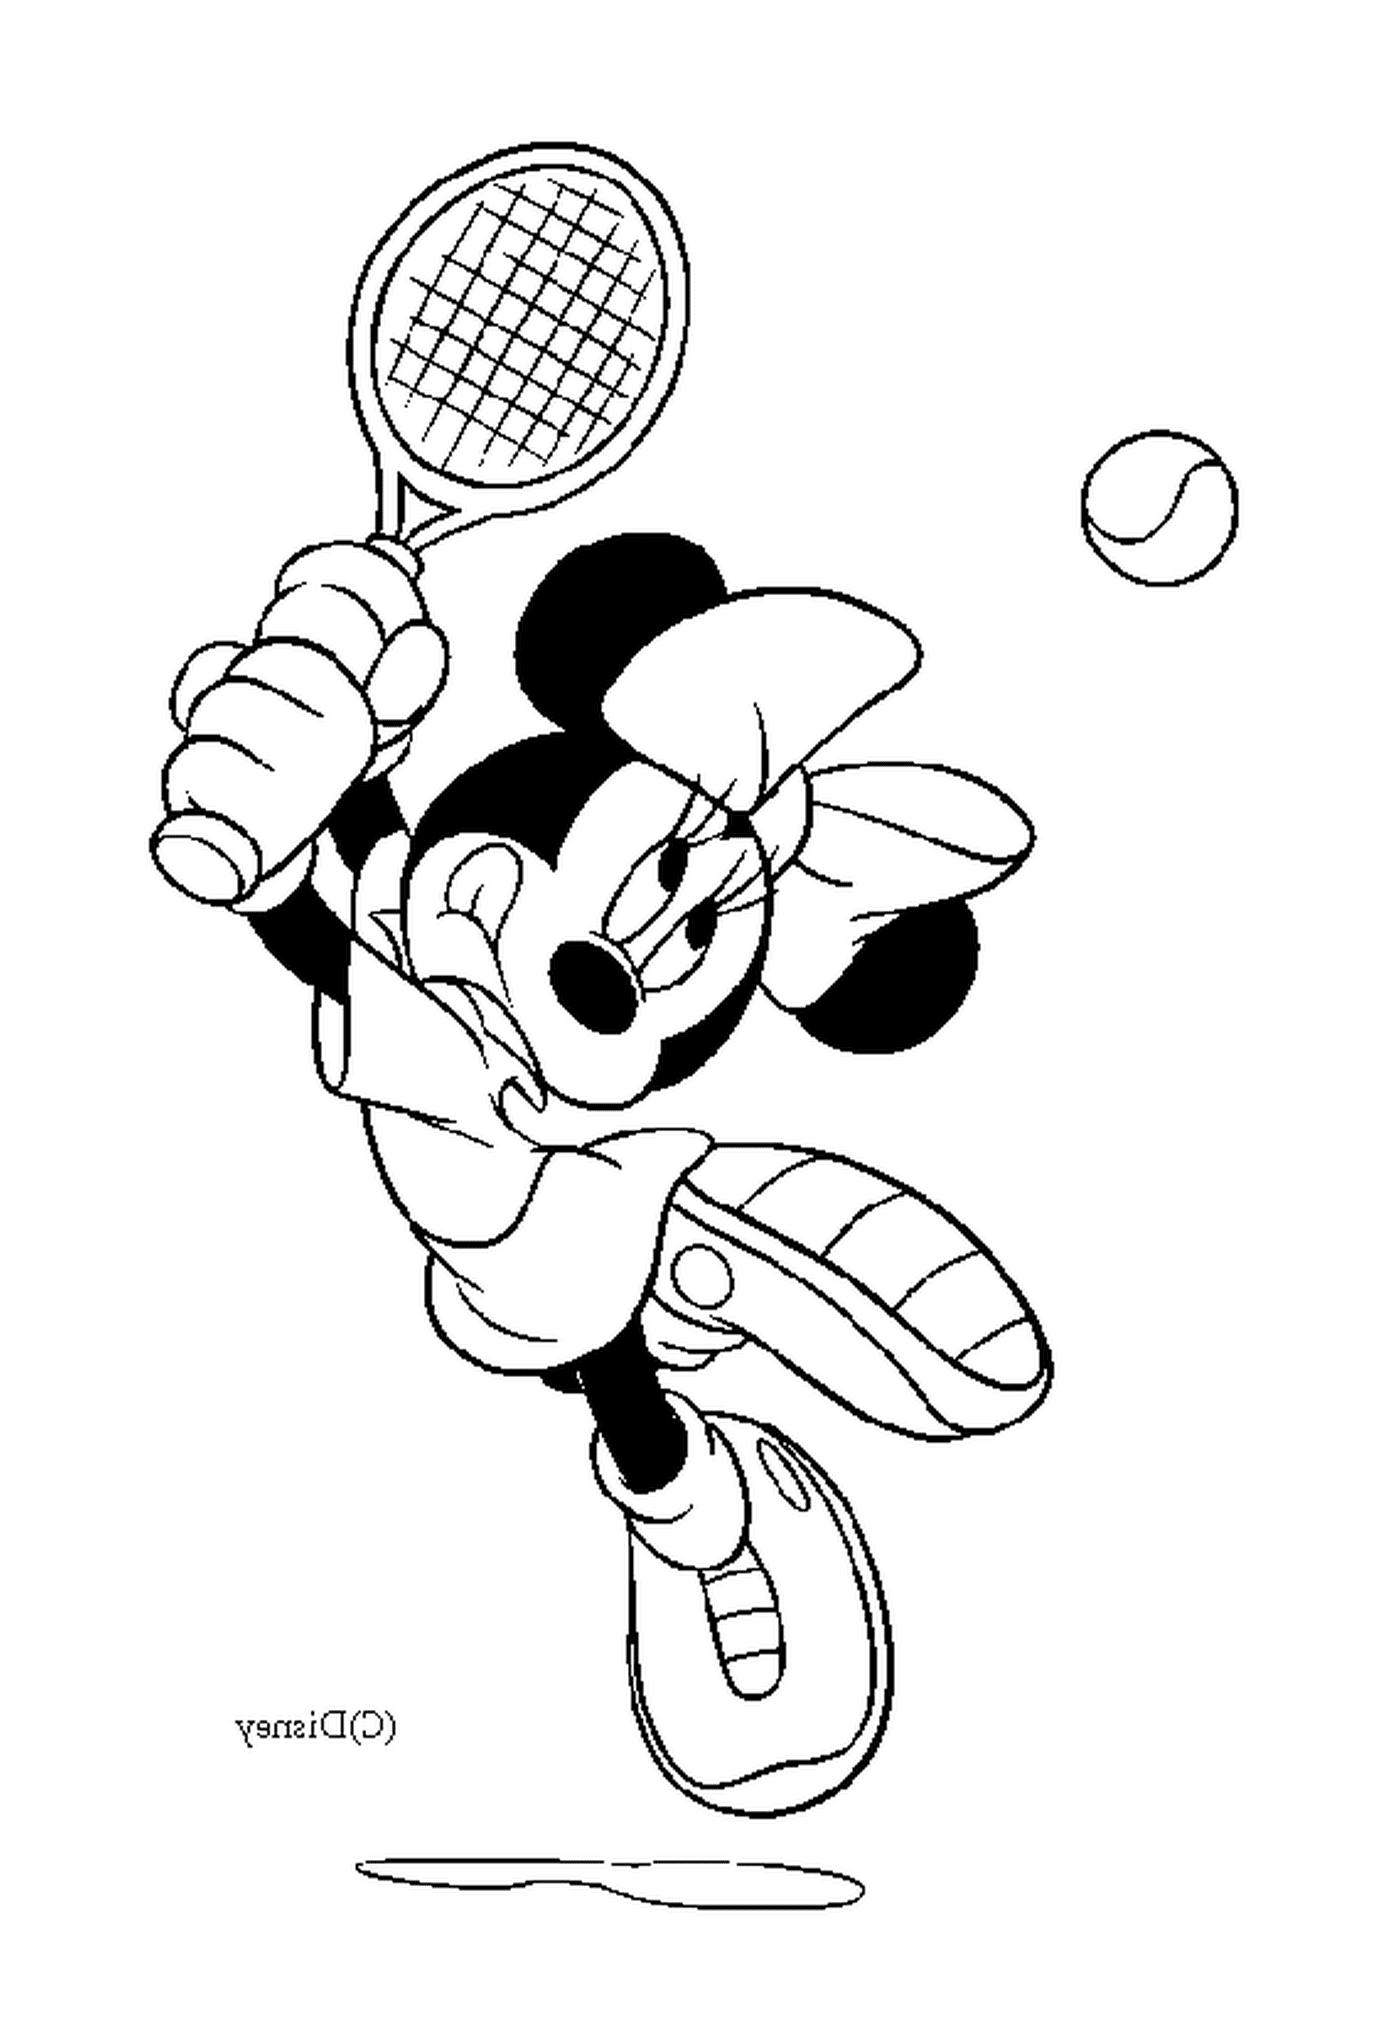  Minnie gioca a tennis 